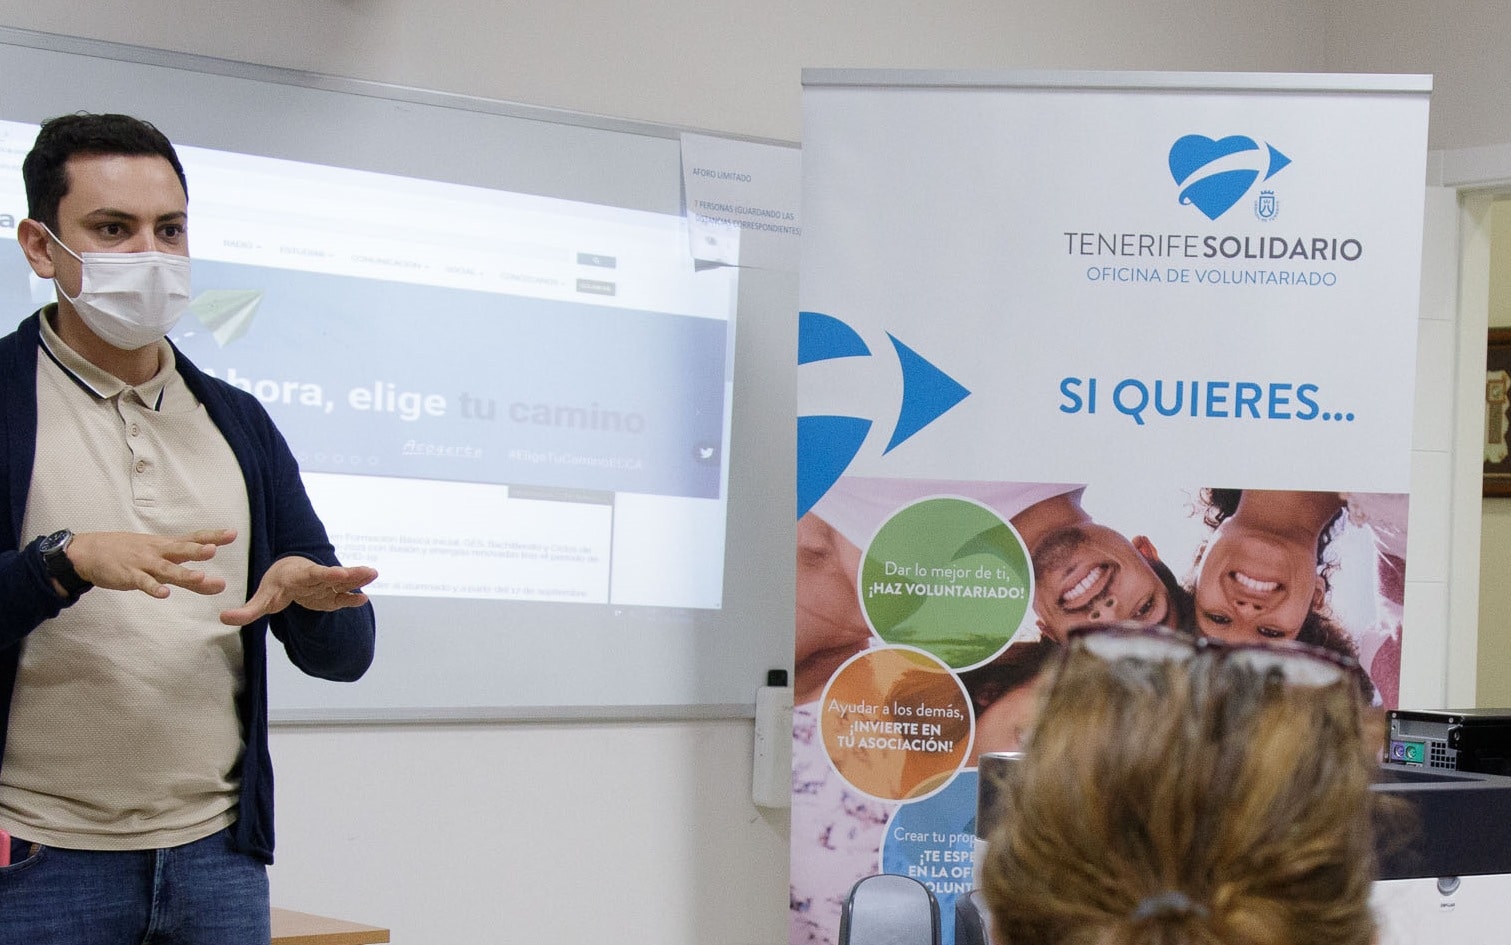 El Cabildo de Tenerife inicia un programa de inclusión social del colectivo migrante mediante talleres y cursos